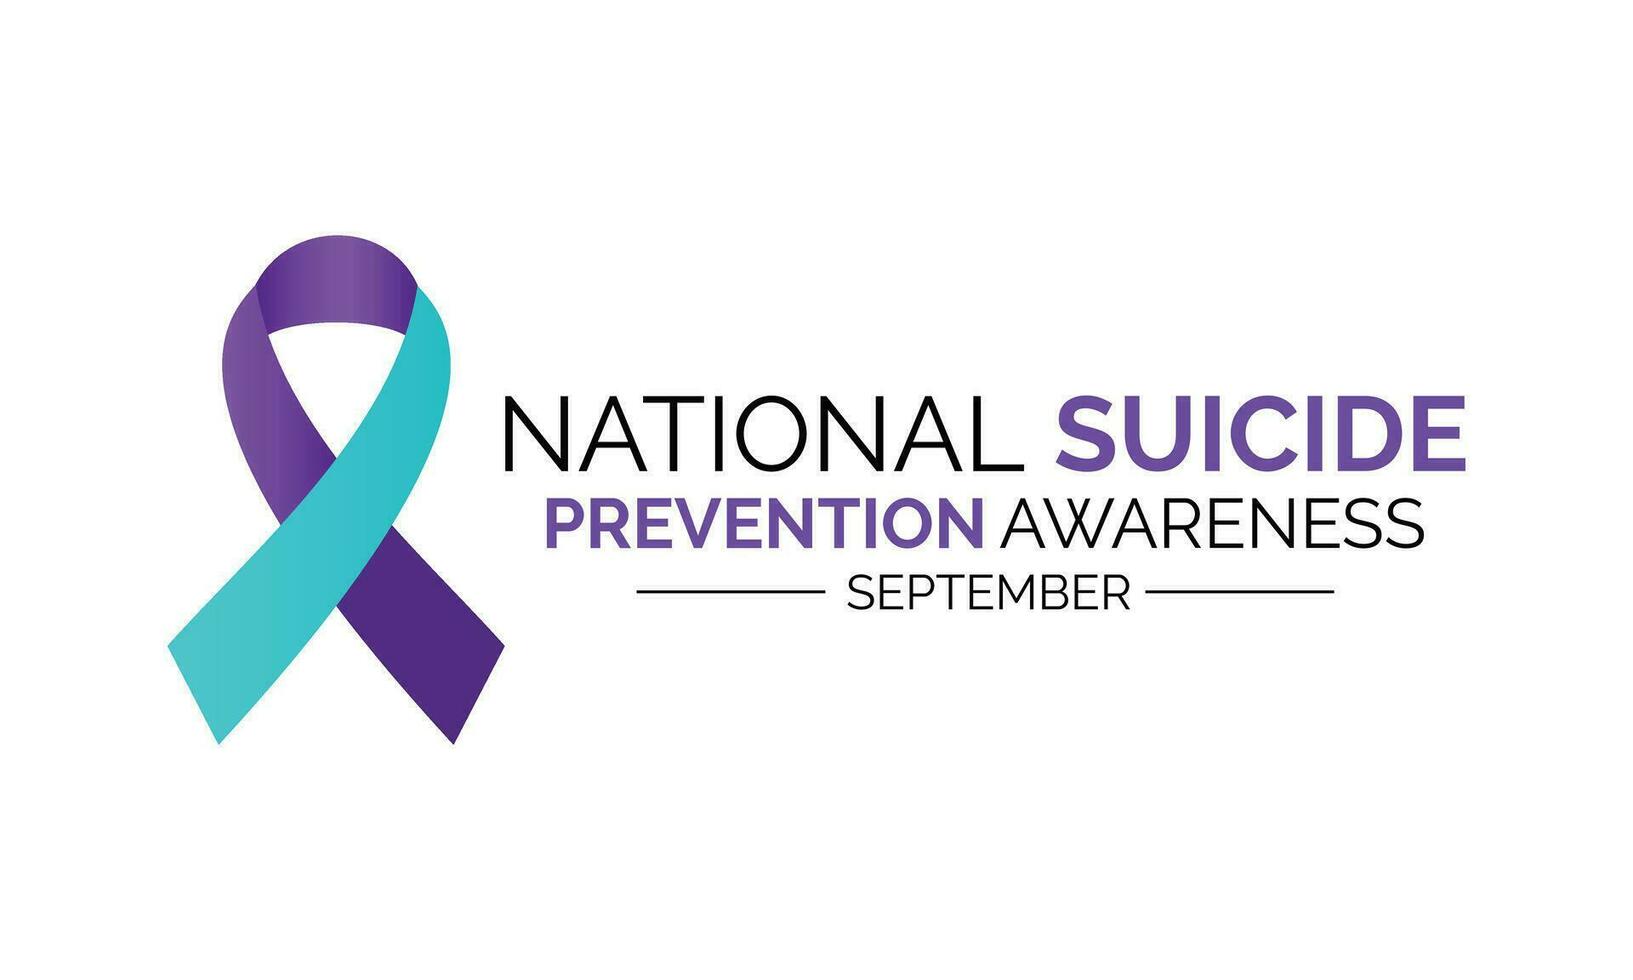 National Selbstmord Verhütung Monat beobachtete jeder Jahr während September Banner, Urlaub, Poster, Karte und Hintergrund design.vektor Illustration Weiß und Blau Farbe Hintergrund. vektor